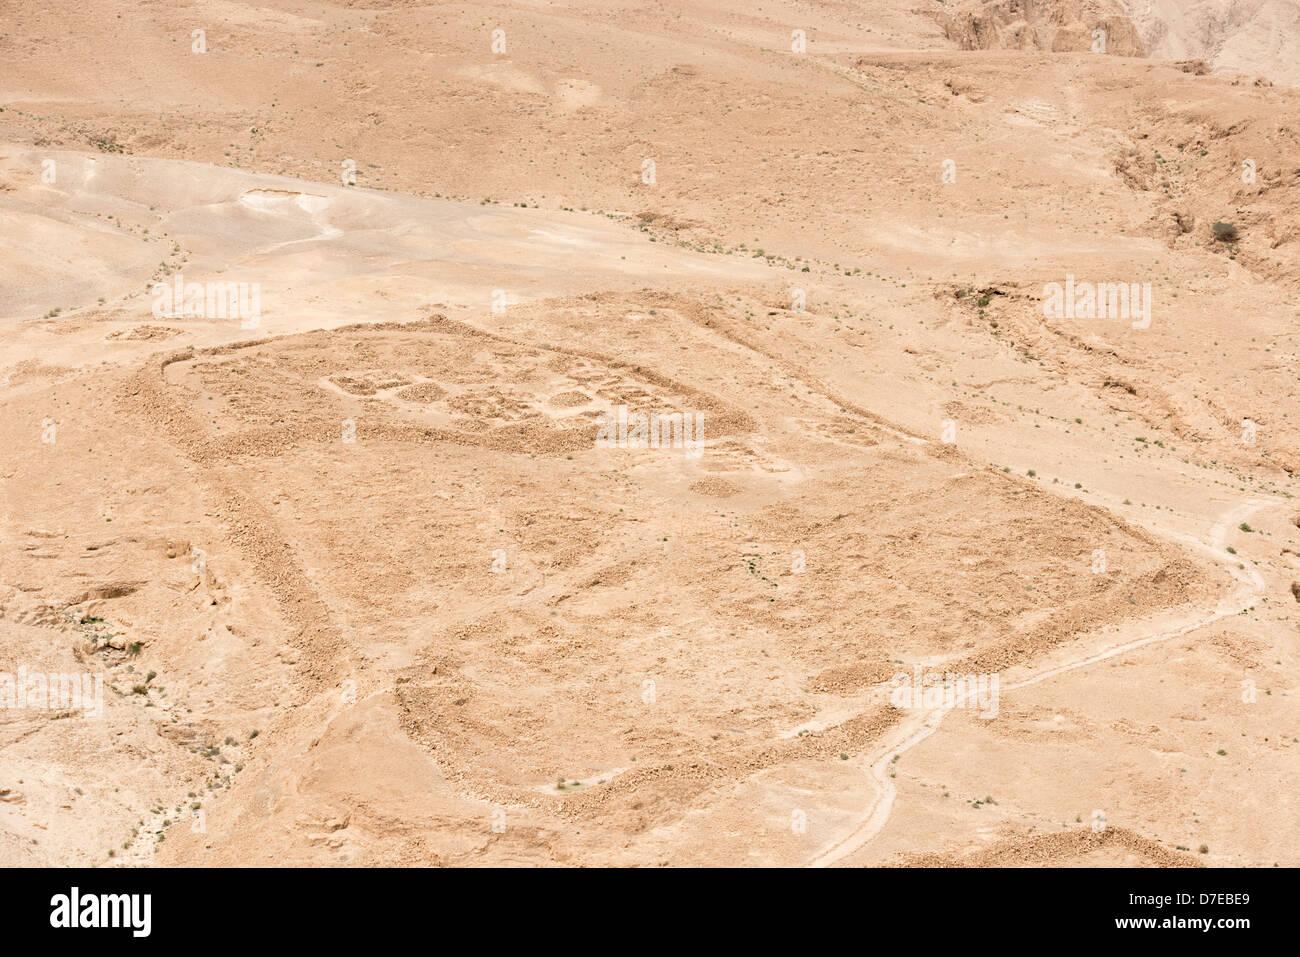 Remains of a Roman Military Camp at Masada, Israel Stock Photo